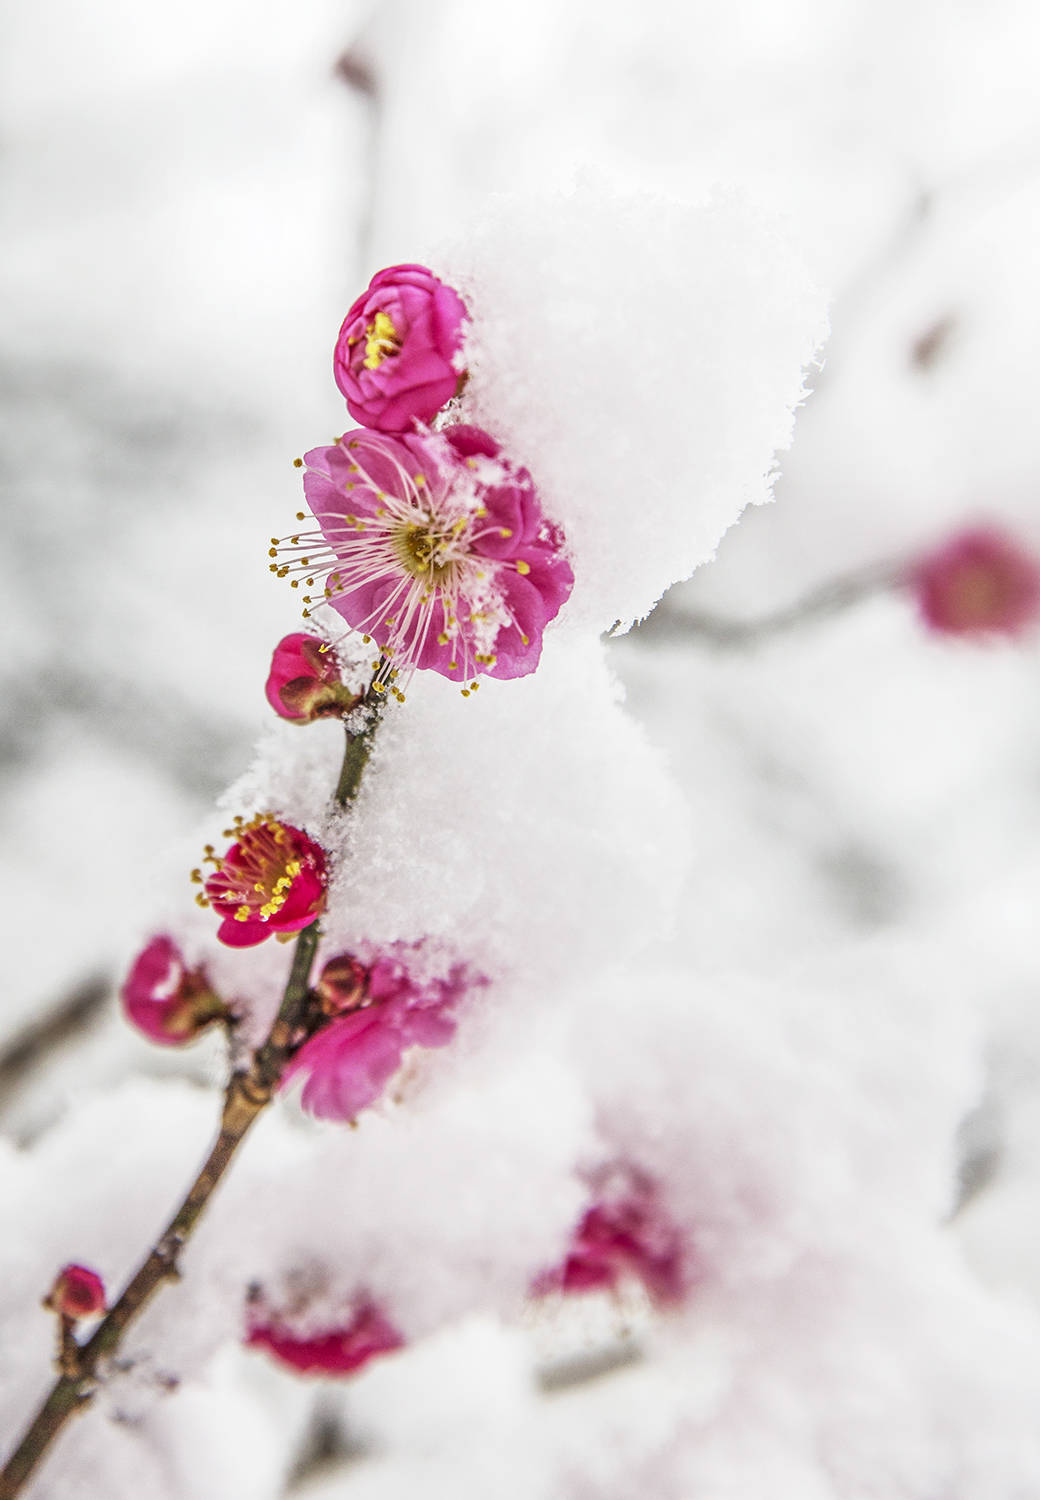 冬天梅花的照片图片